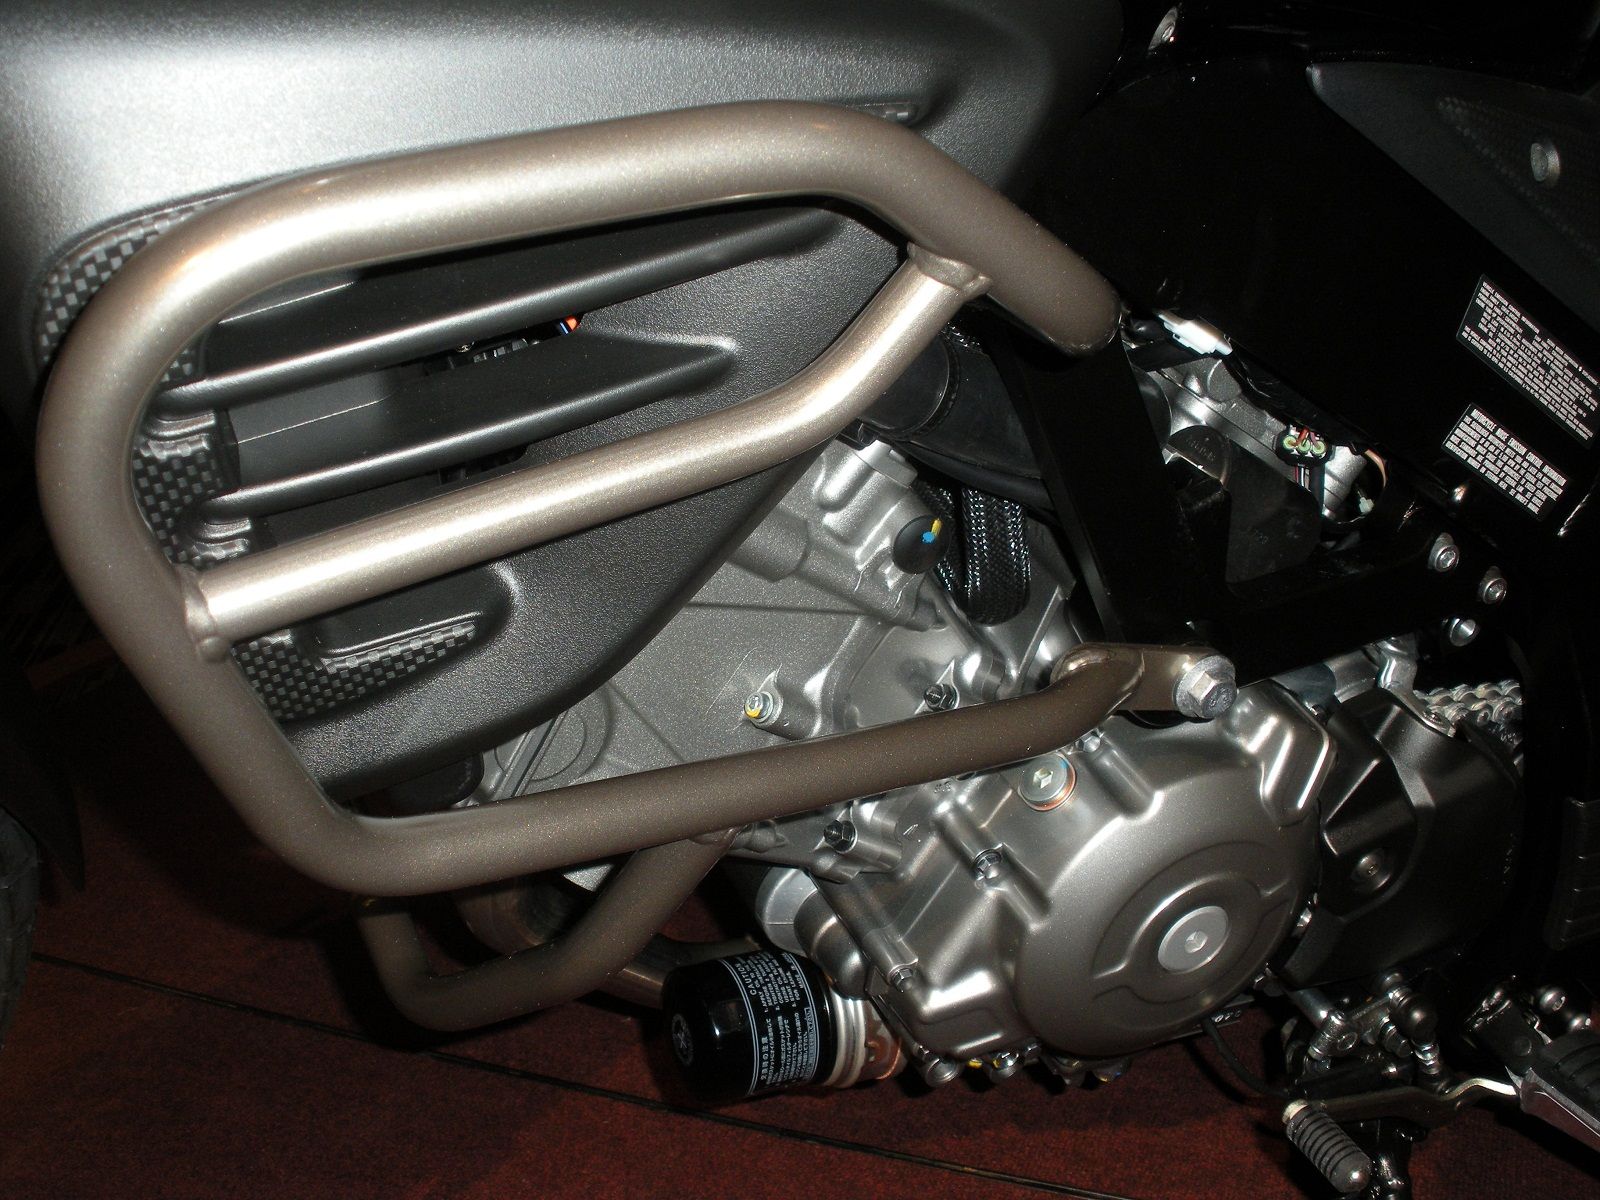 2012 Suzuki V-Strom 1000